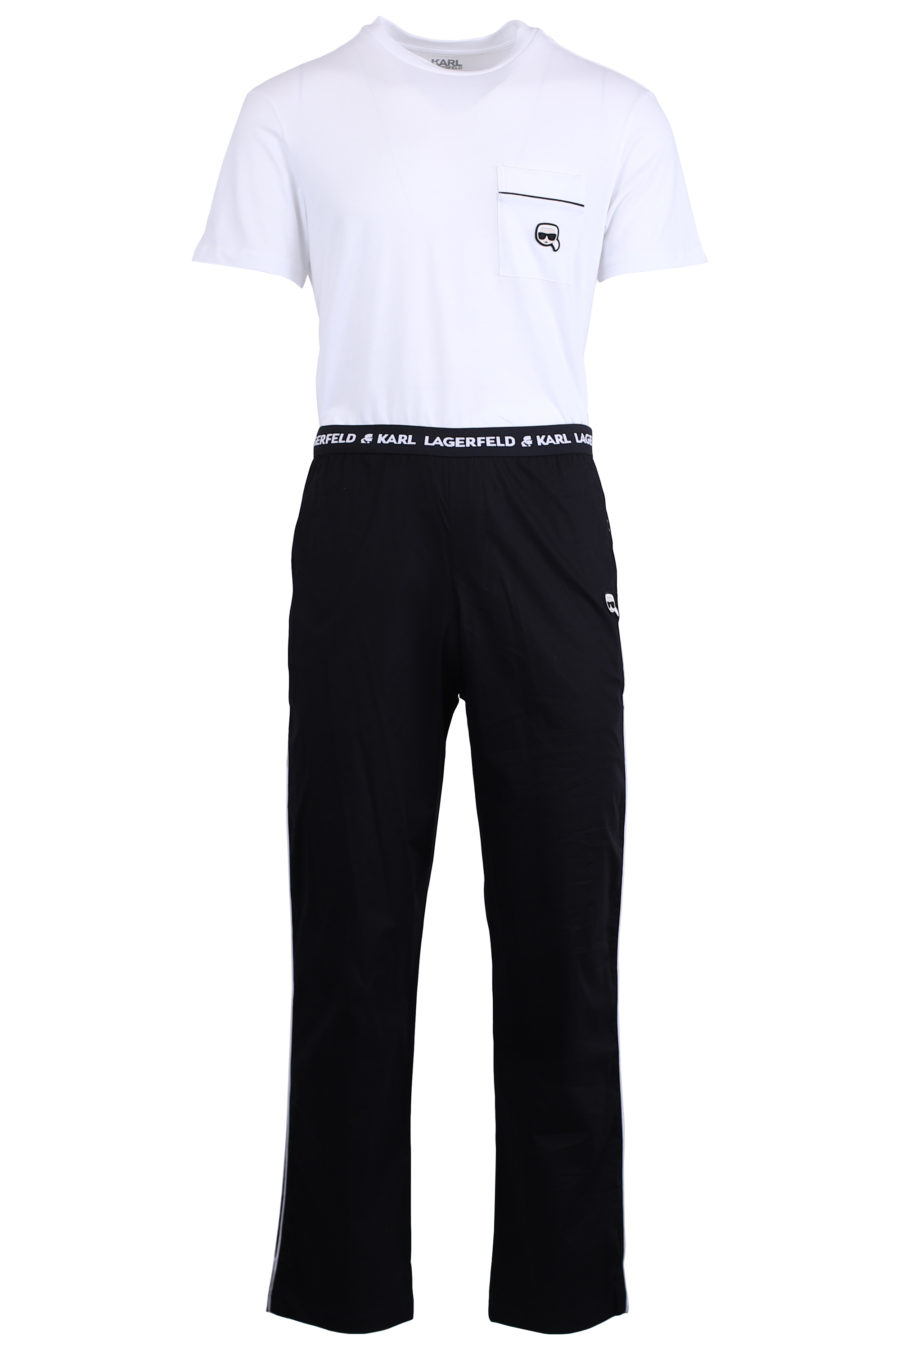 Conjunto de pijama preto e branco "ikonik" - IMG 0609